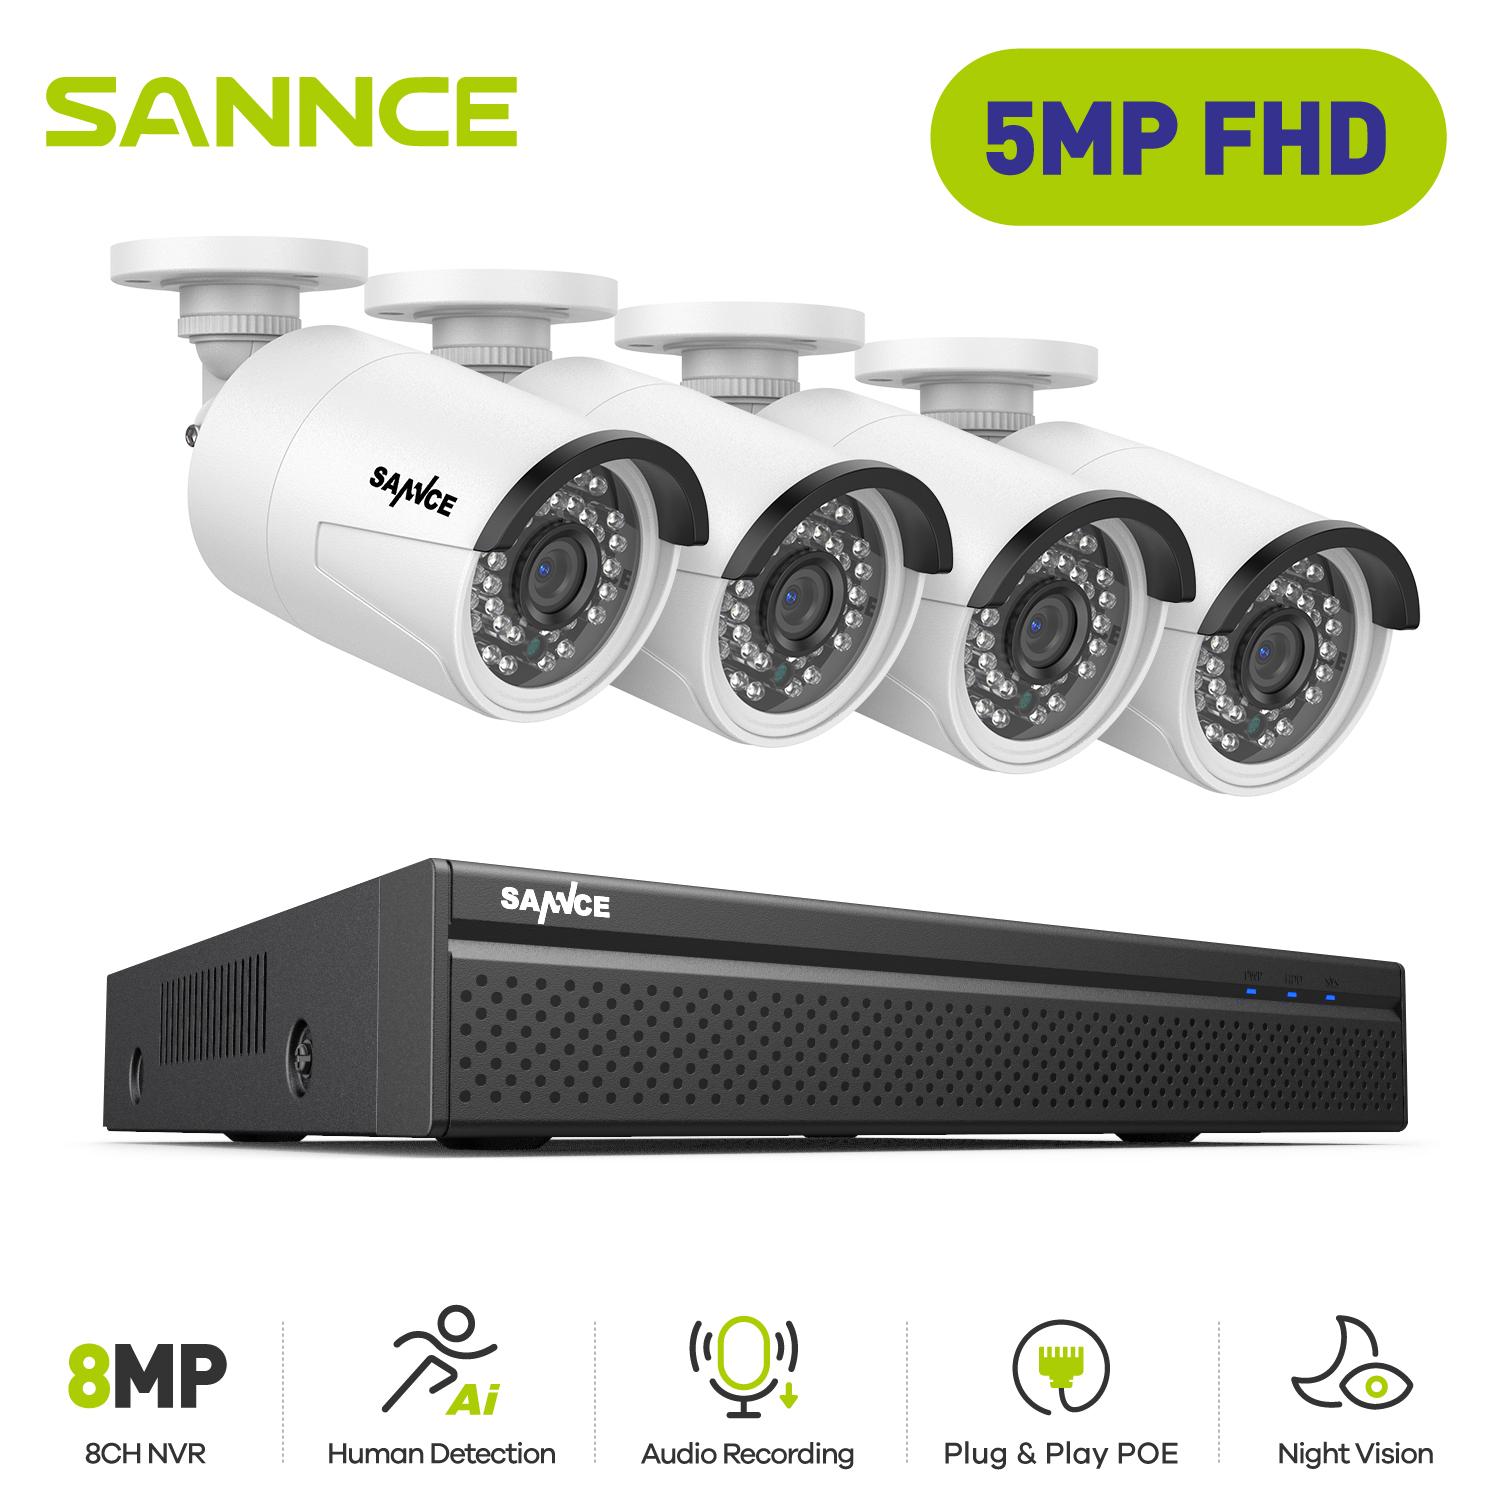 Sannce 8ch 5MP HD Máy ảnh giám sát bảo mật video POE Hệ thống 4PCS 5MP IP camera ngoài trời Weatherproof Home CCTV NVR System Build-In HDD: Không có